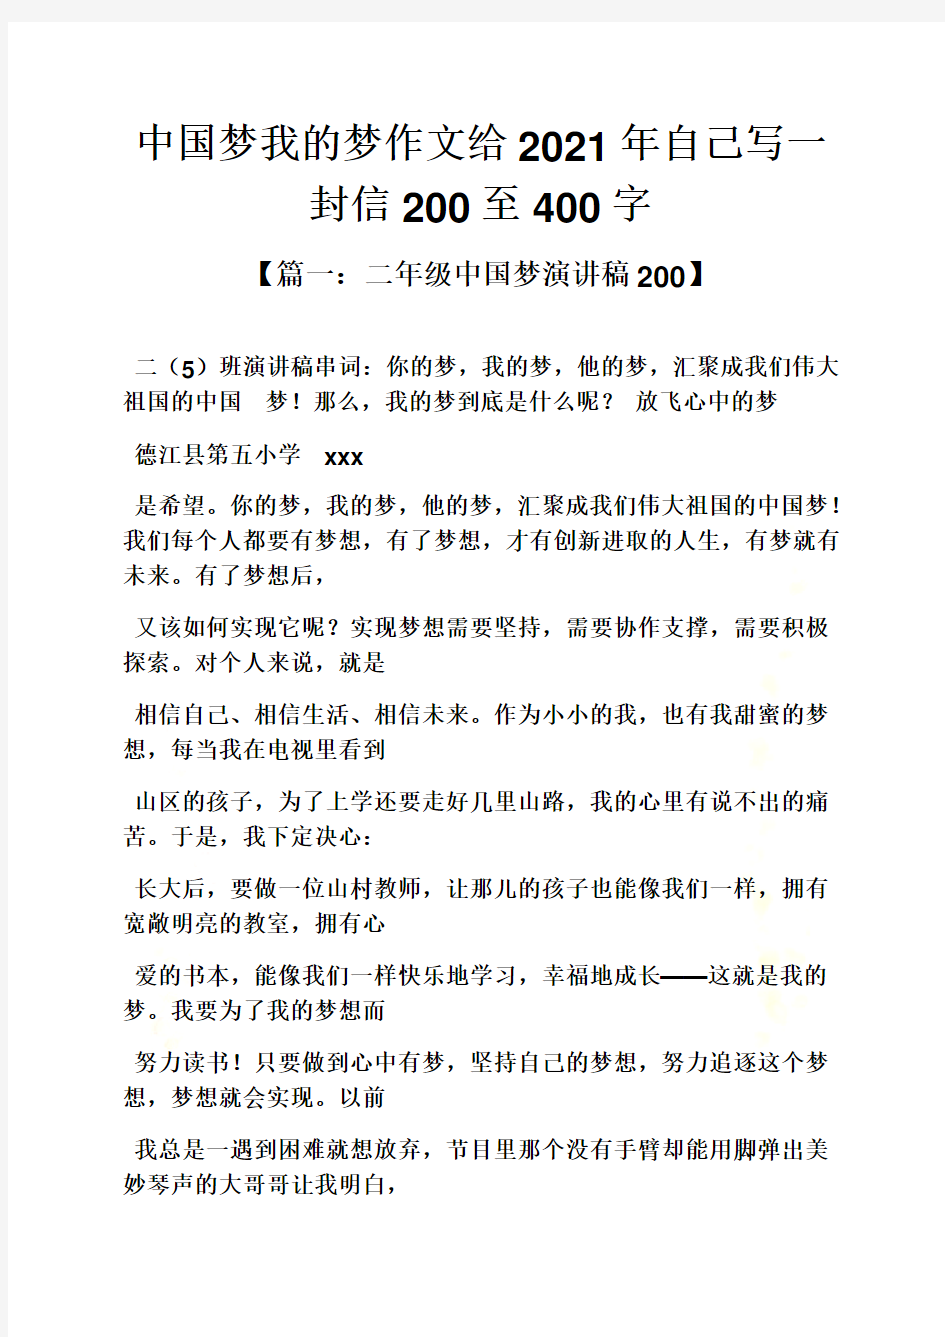 自己作文之中国梦我的梦作文给2021年自己写一封信200至400字